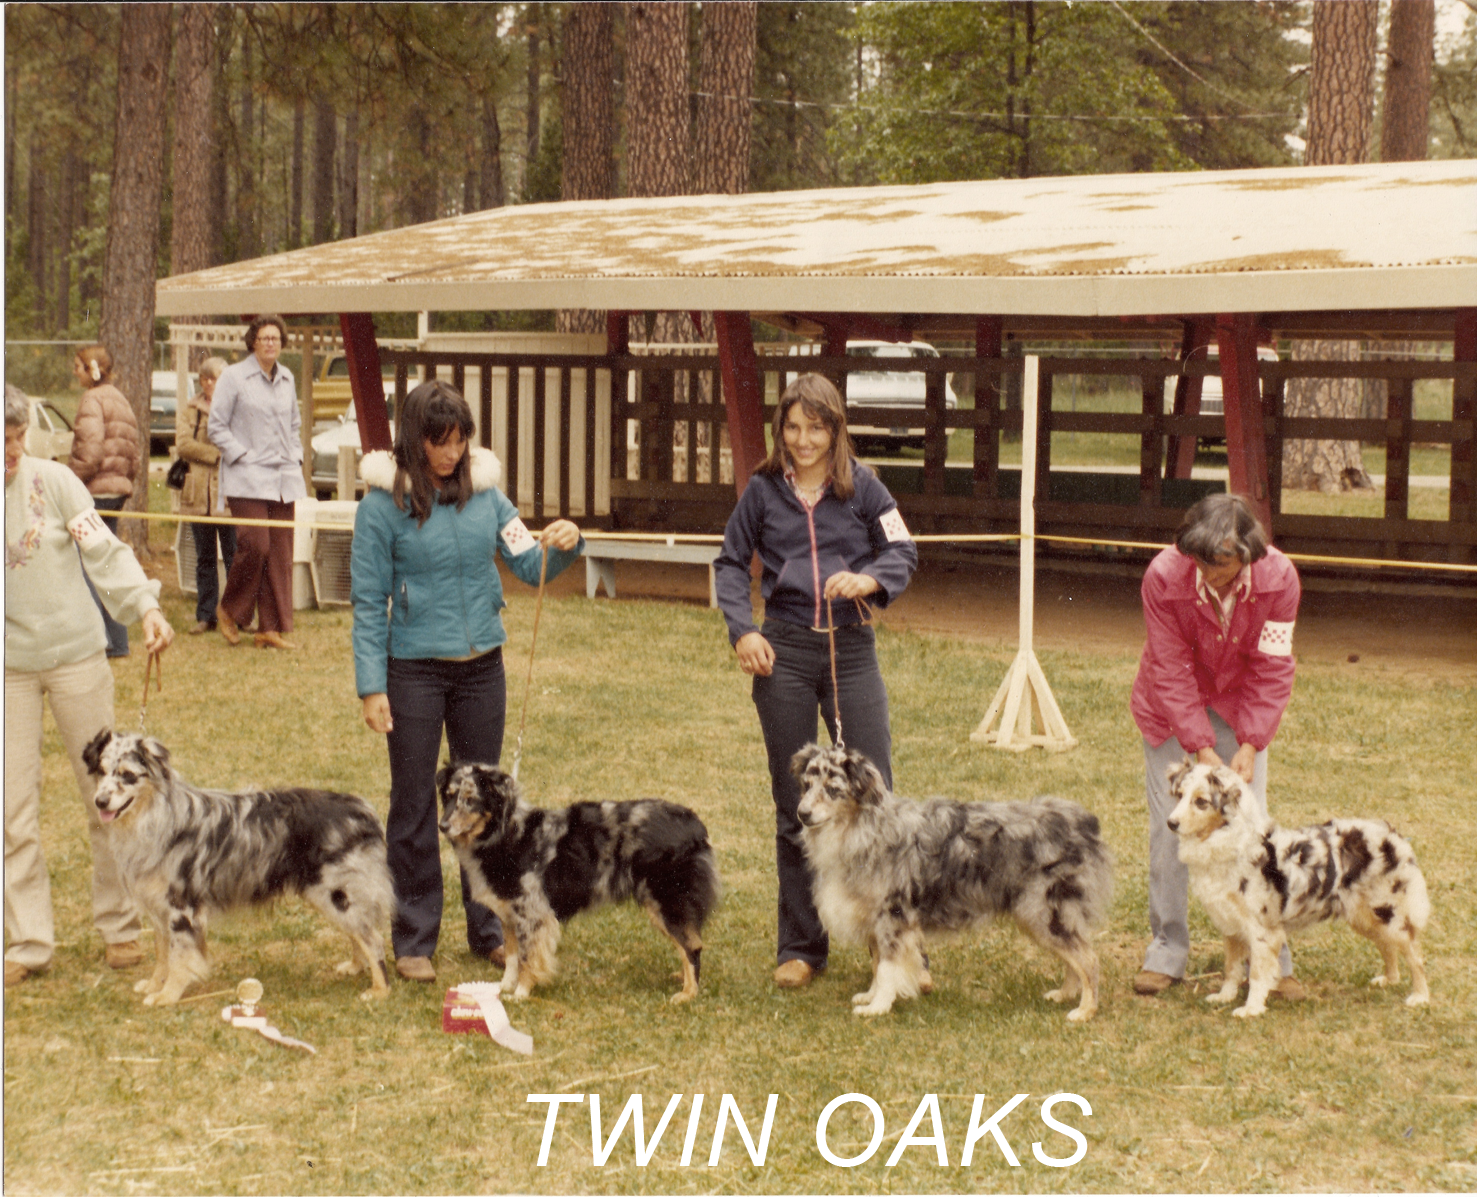 TWIN OAKS: The California Branch on the Australian Shepherd family tree